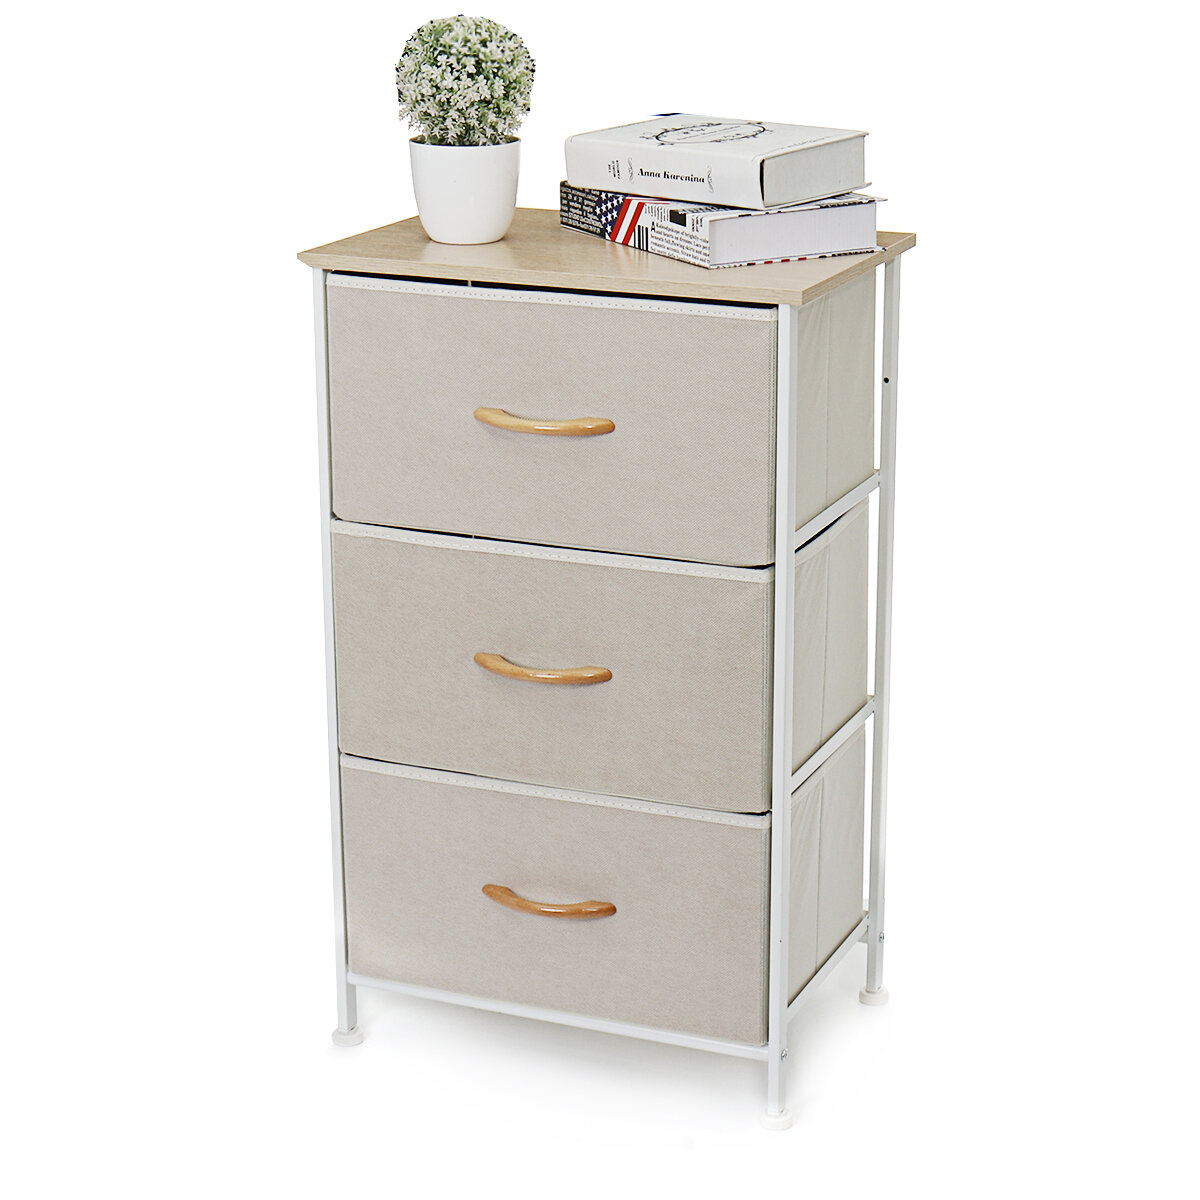 

3 Drawers File CAbinets Furniture Storage Tower Unit Closet Dresser Bedside for Bedroom Office